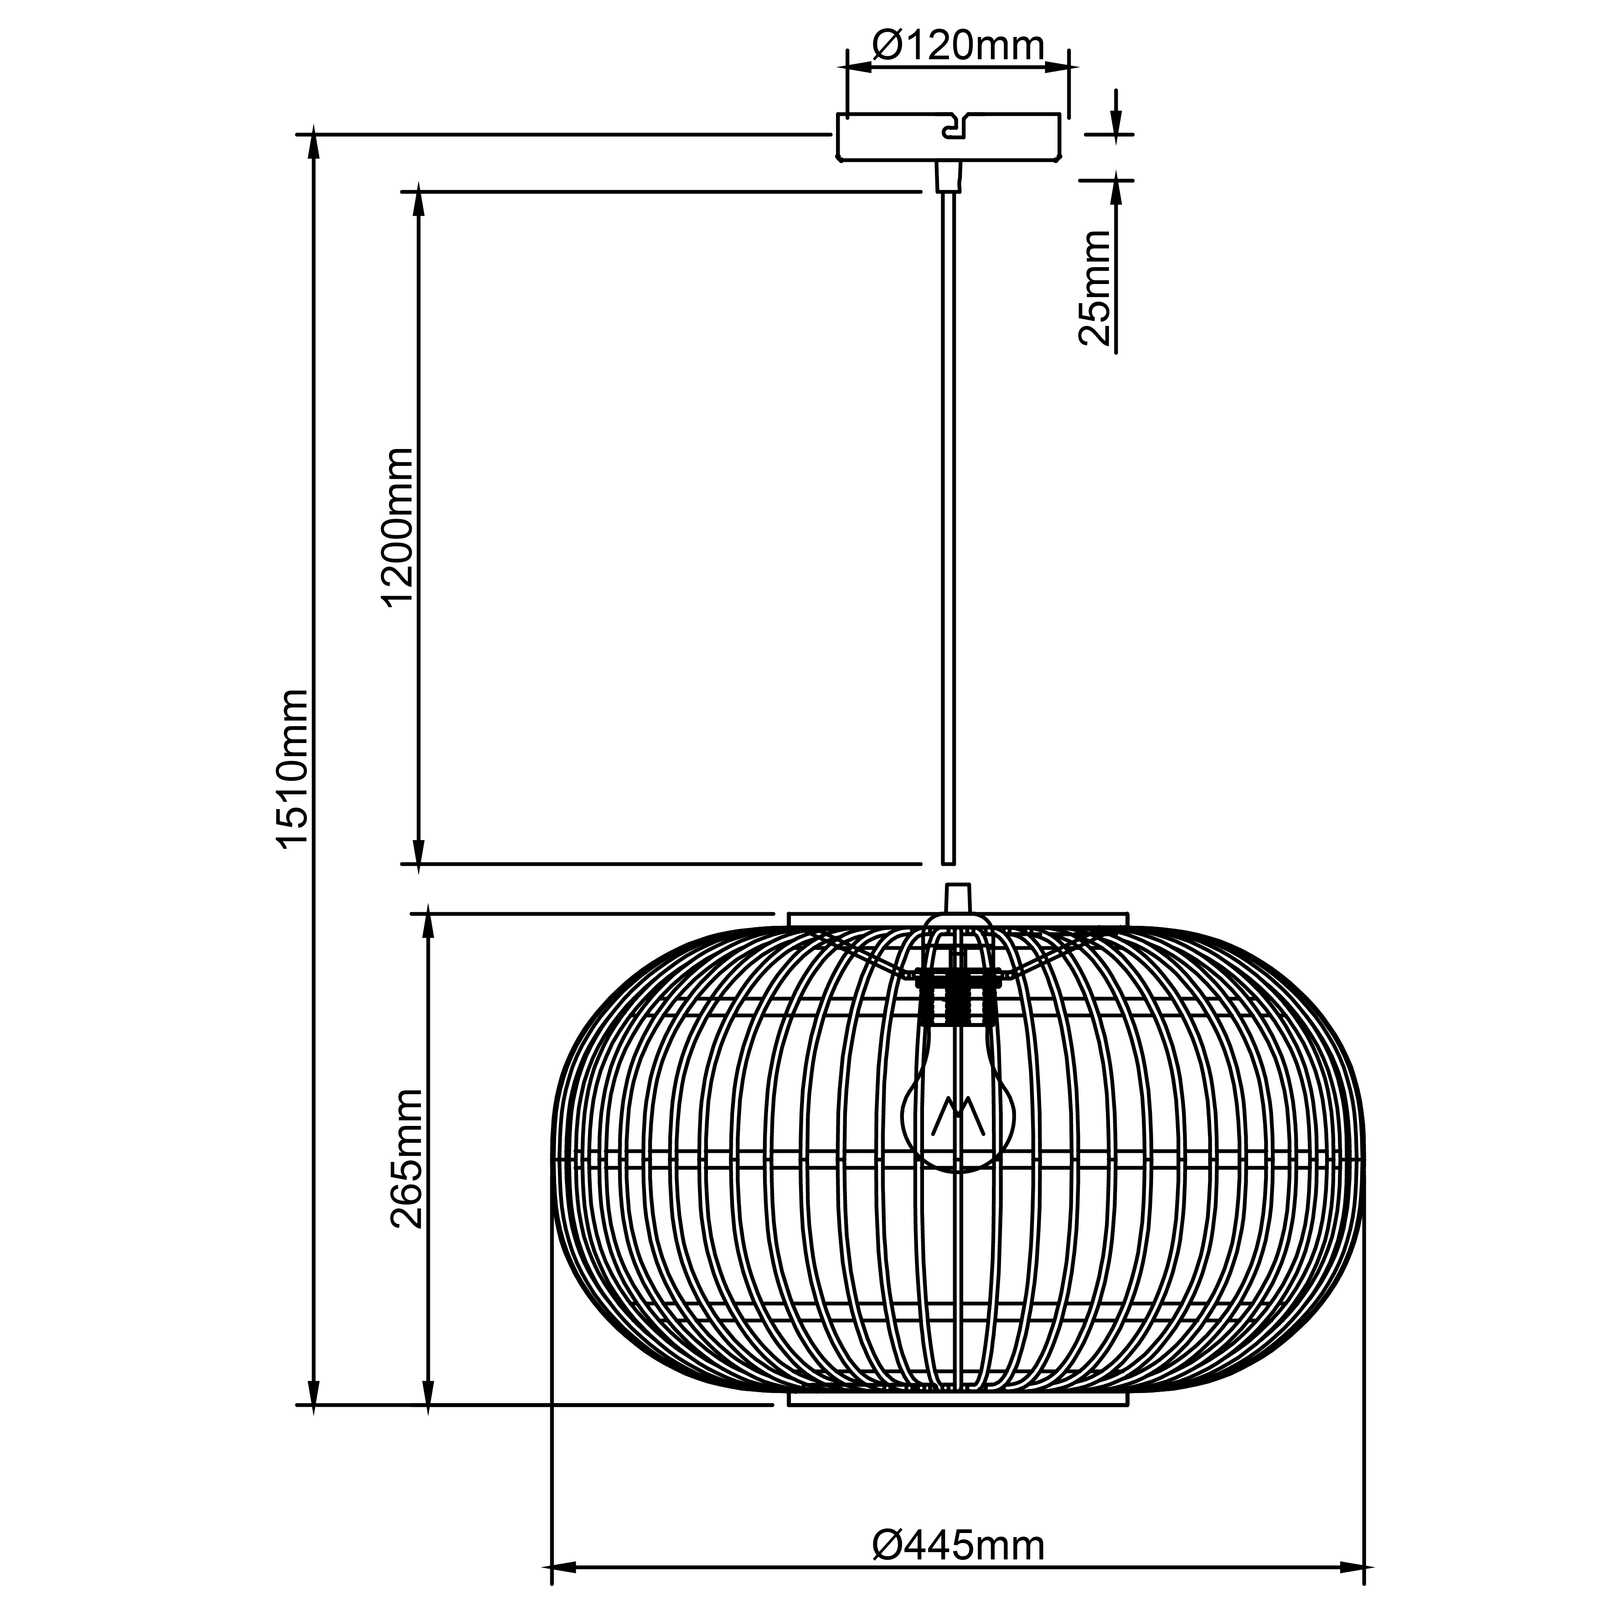             Houten hanglamp - Viktor 4 - Bruin
        